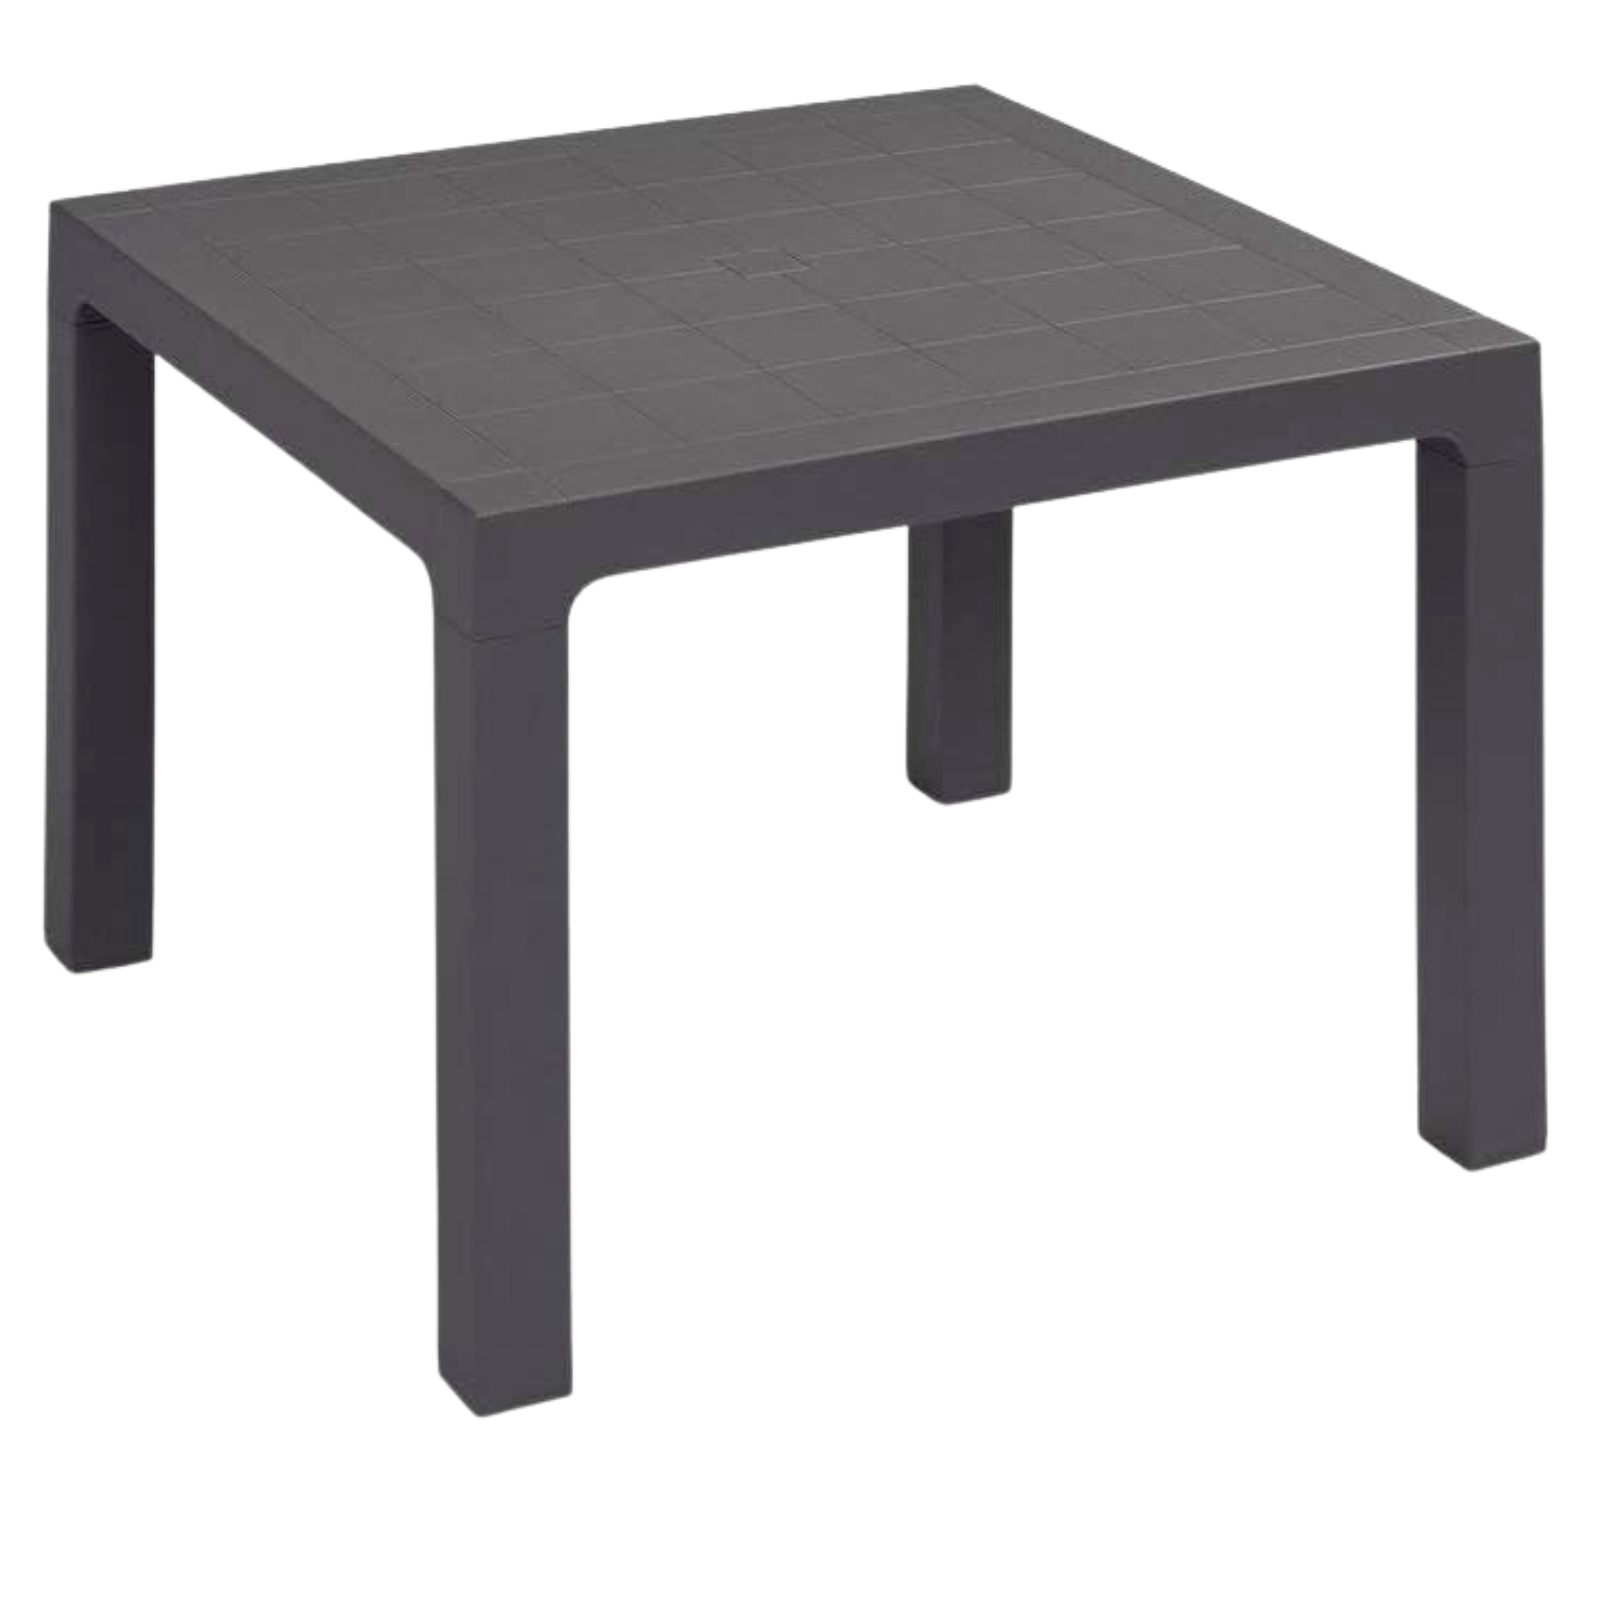 Tavolo quadrato in polipropilene "Ares 90" design moderno da esterno o interno